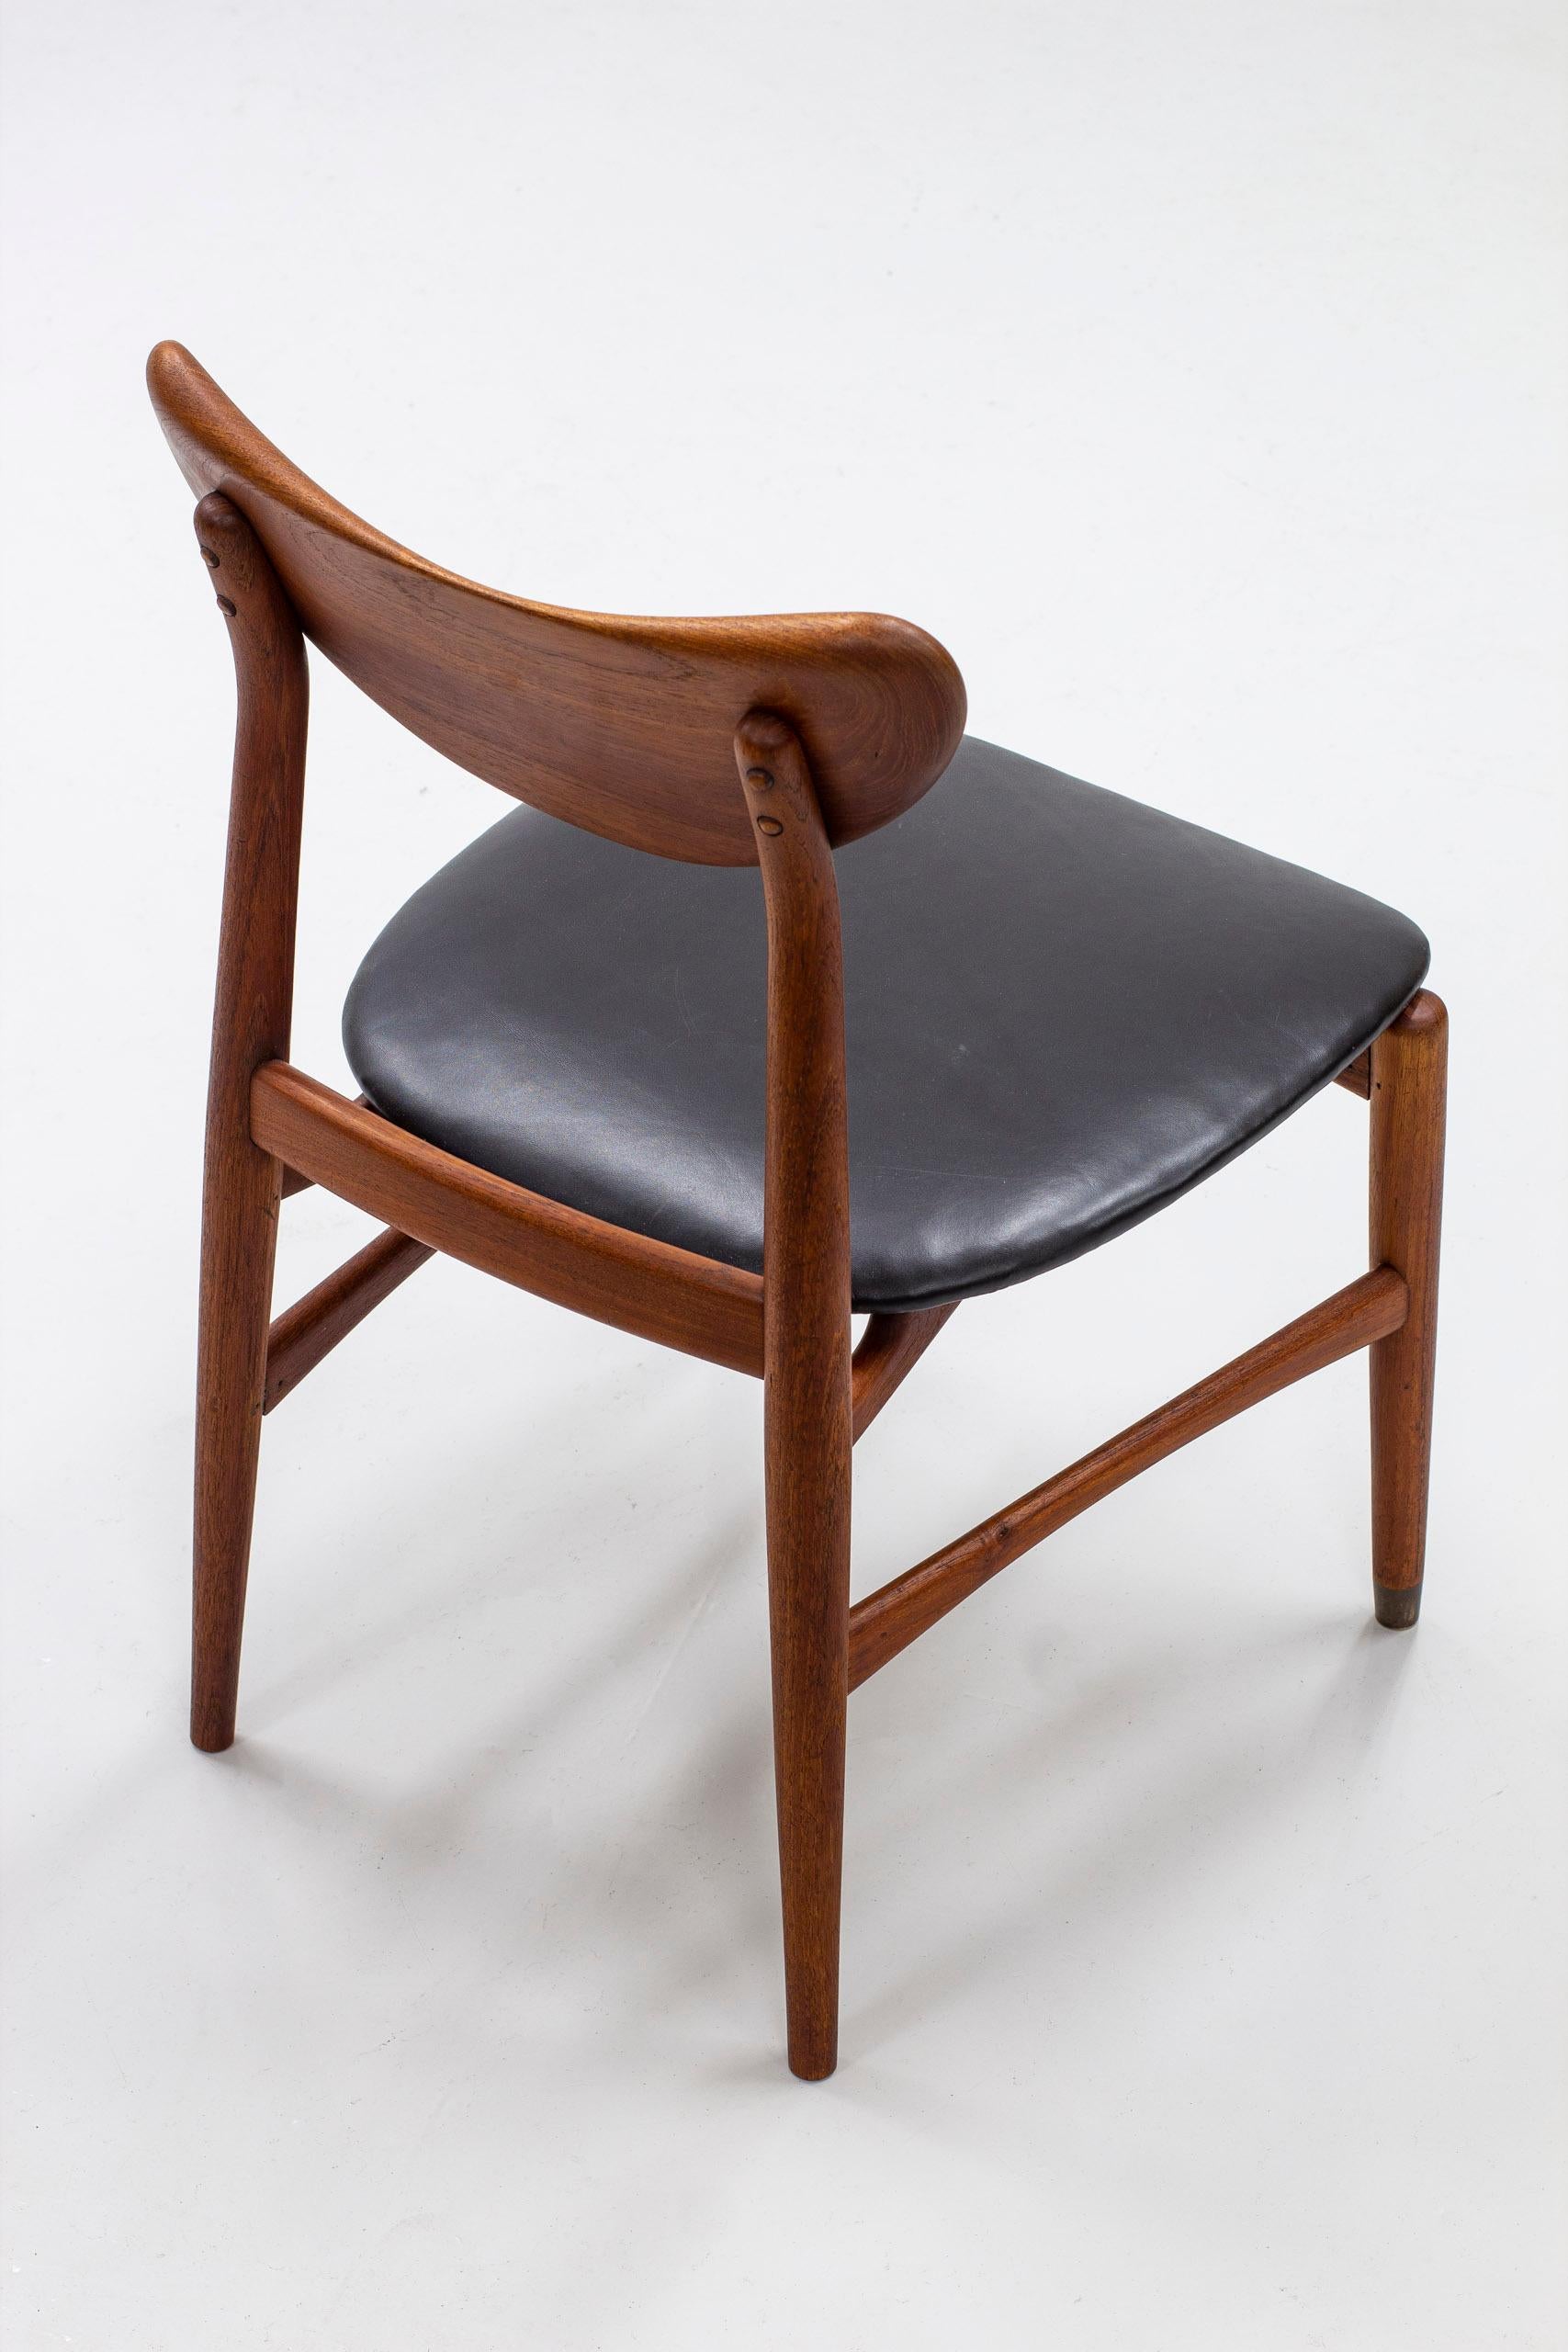 Scandinavian Modern Danish Modern Sculpted Side Chair in Teak by Cabinetmaker Oluf Jensen, 50s